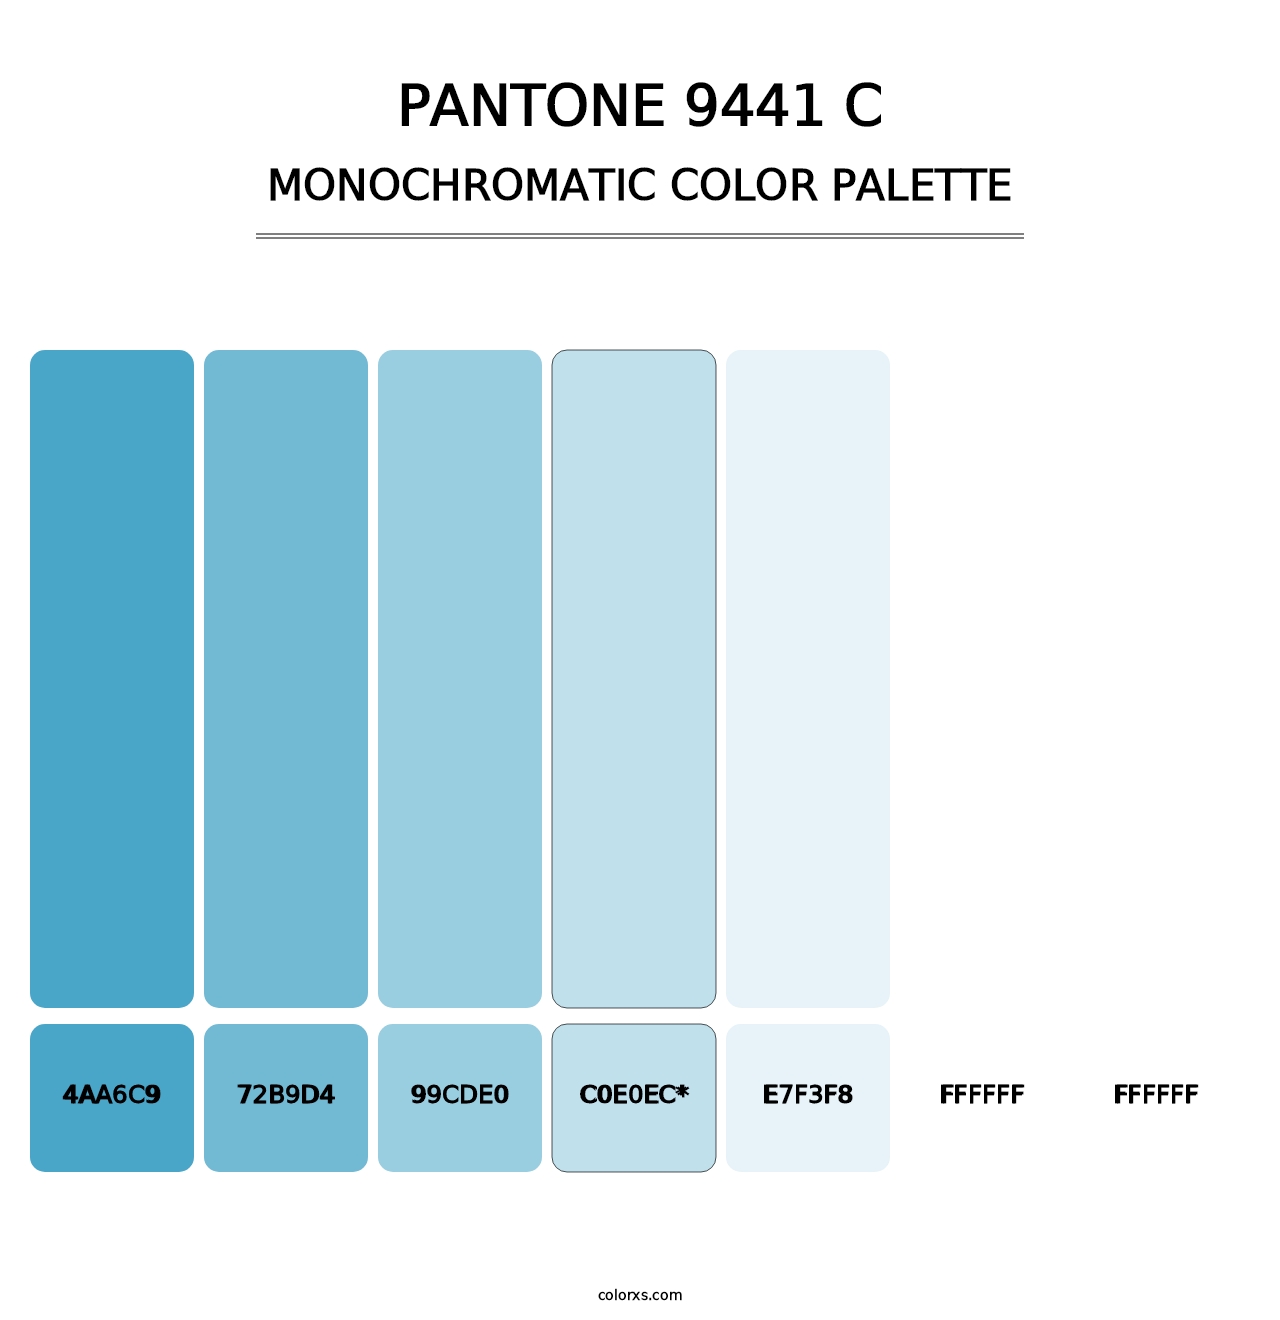 PANTONE 9441 C - Monochromatic Color Palette